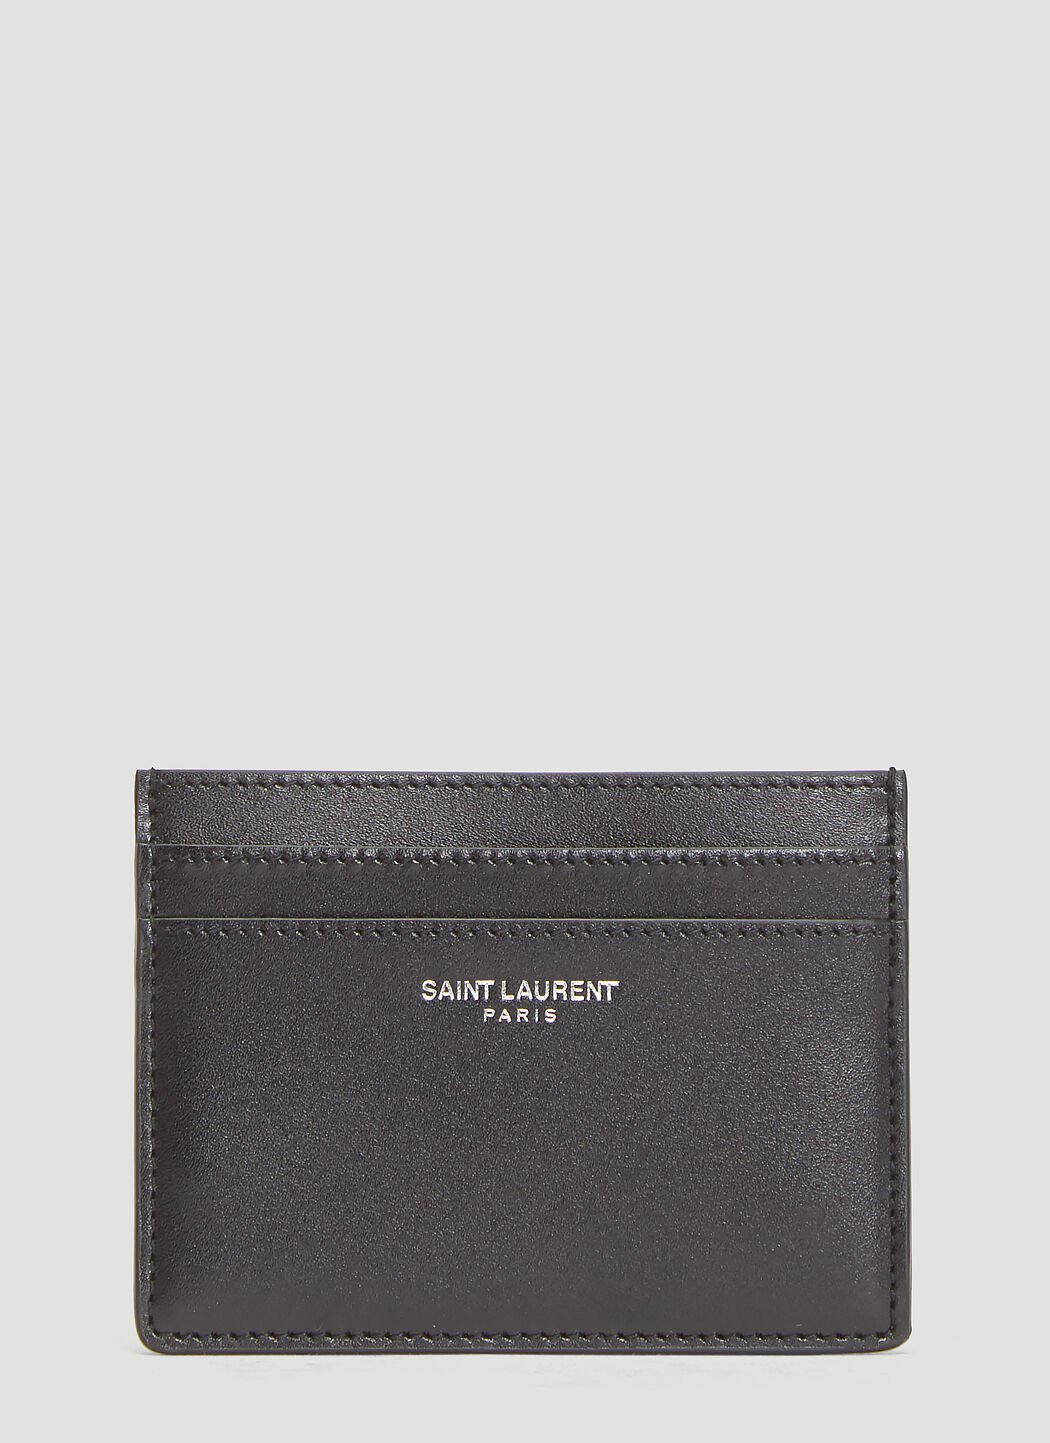 Saint Laurent Credit Card Holder Black sla0238013